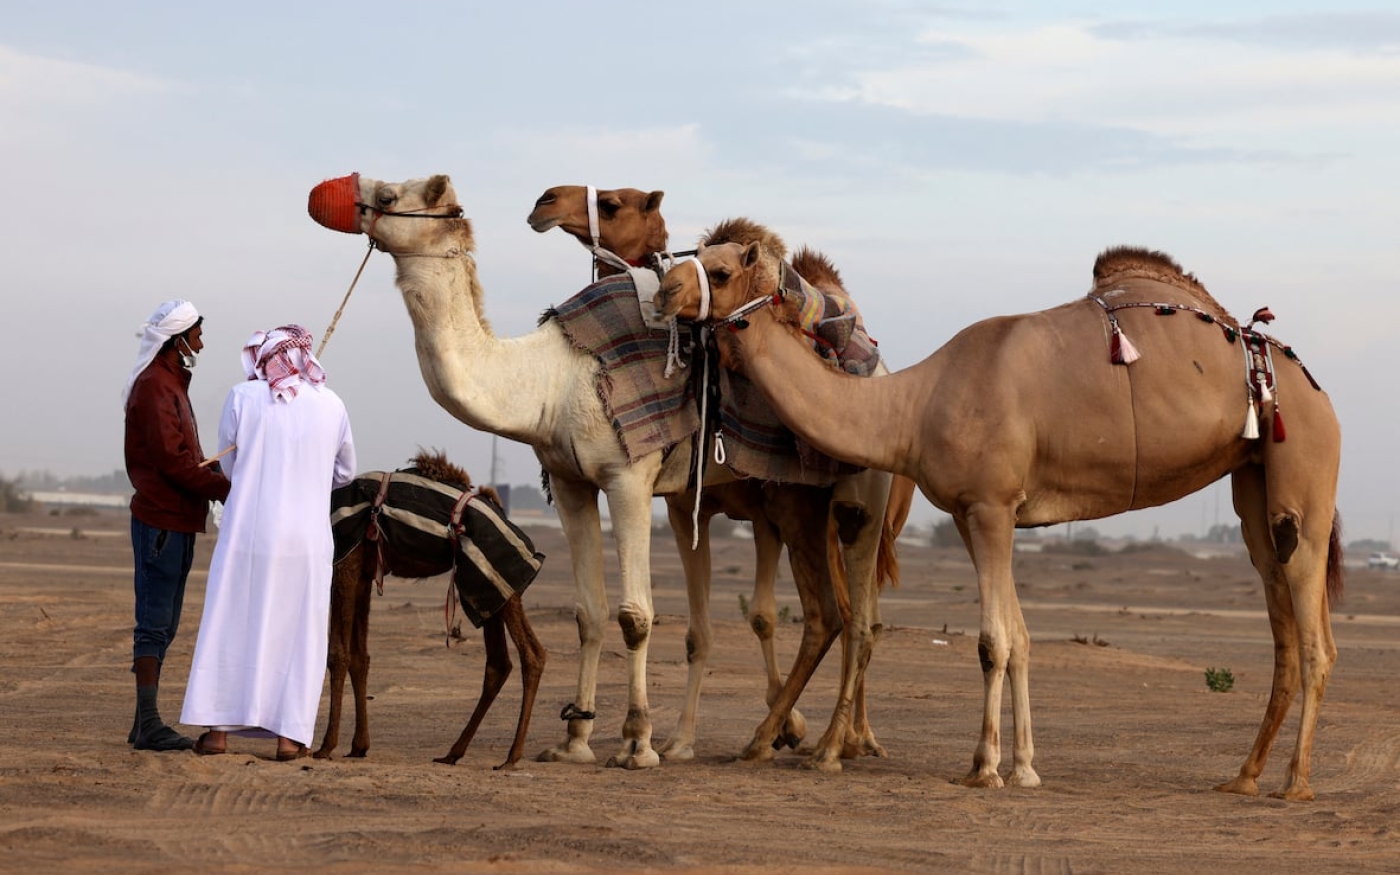 Le chameau a été domestiqué et utilisé pour porter des charges lourdes sur de longues distances, ainsi que pour sa viande et son lait (AFP/Karim Sahib)